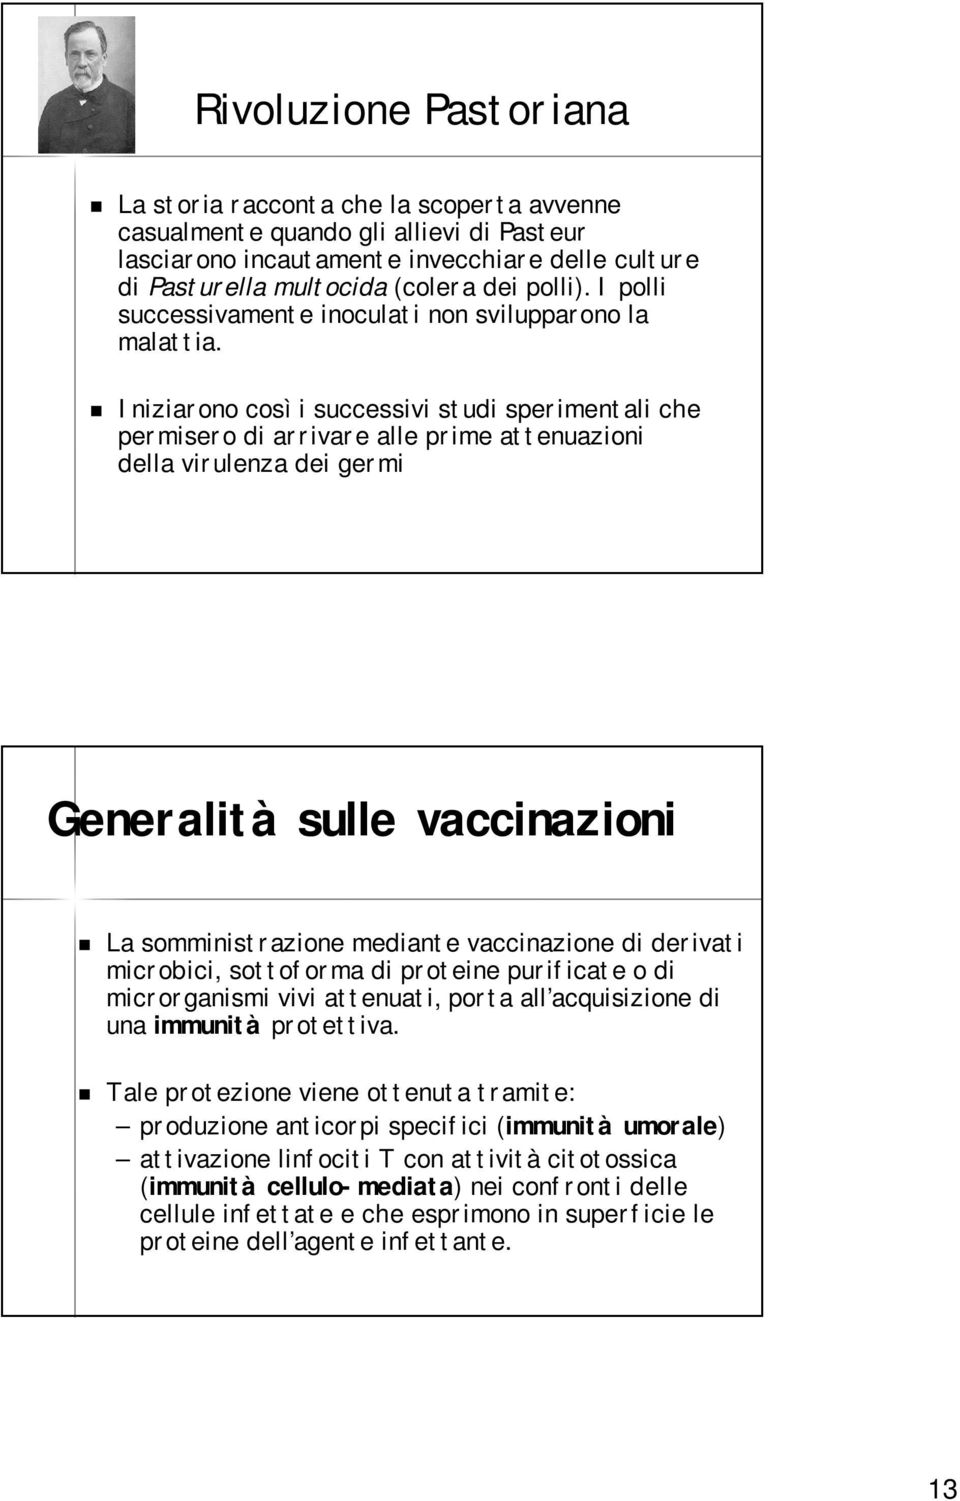 Iniziarono così i successivi studi sperimentali che permisero di arrivare alle prime attenuazioni della virulenza dei germi Generalità sulle vaccinazioni La somministrazione mediante vaccinazione di